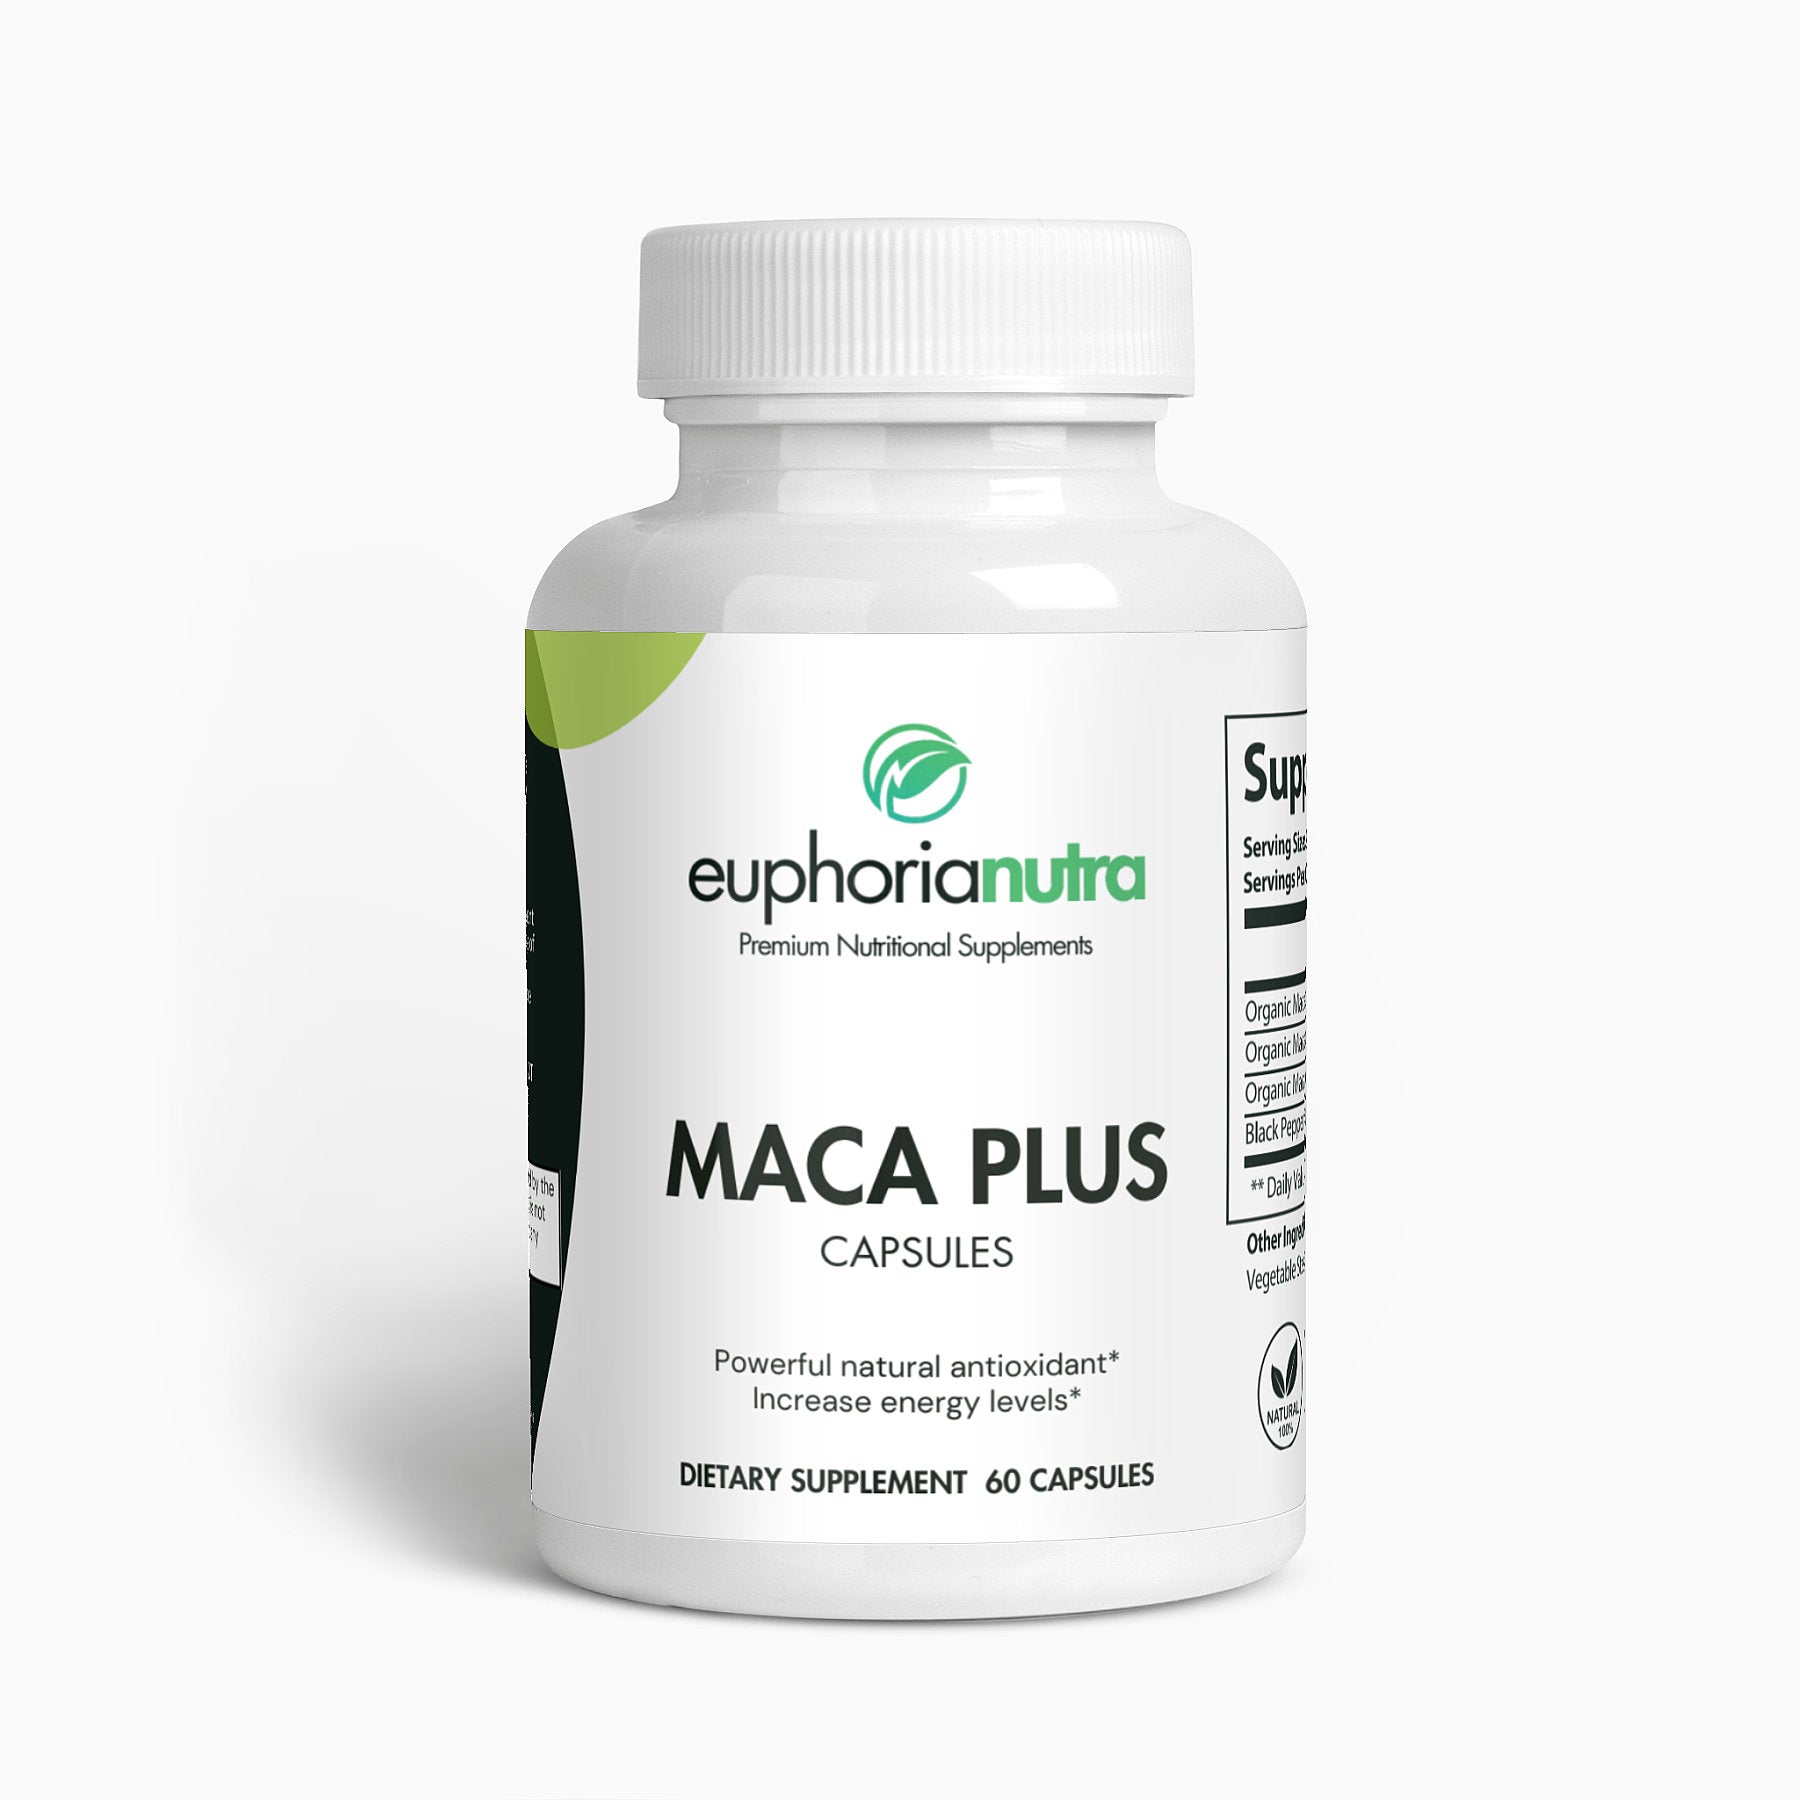 Maca-Plus-euphorianutra-Bottle-Capsules